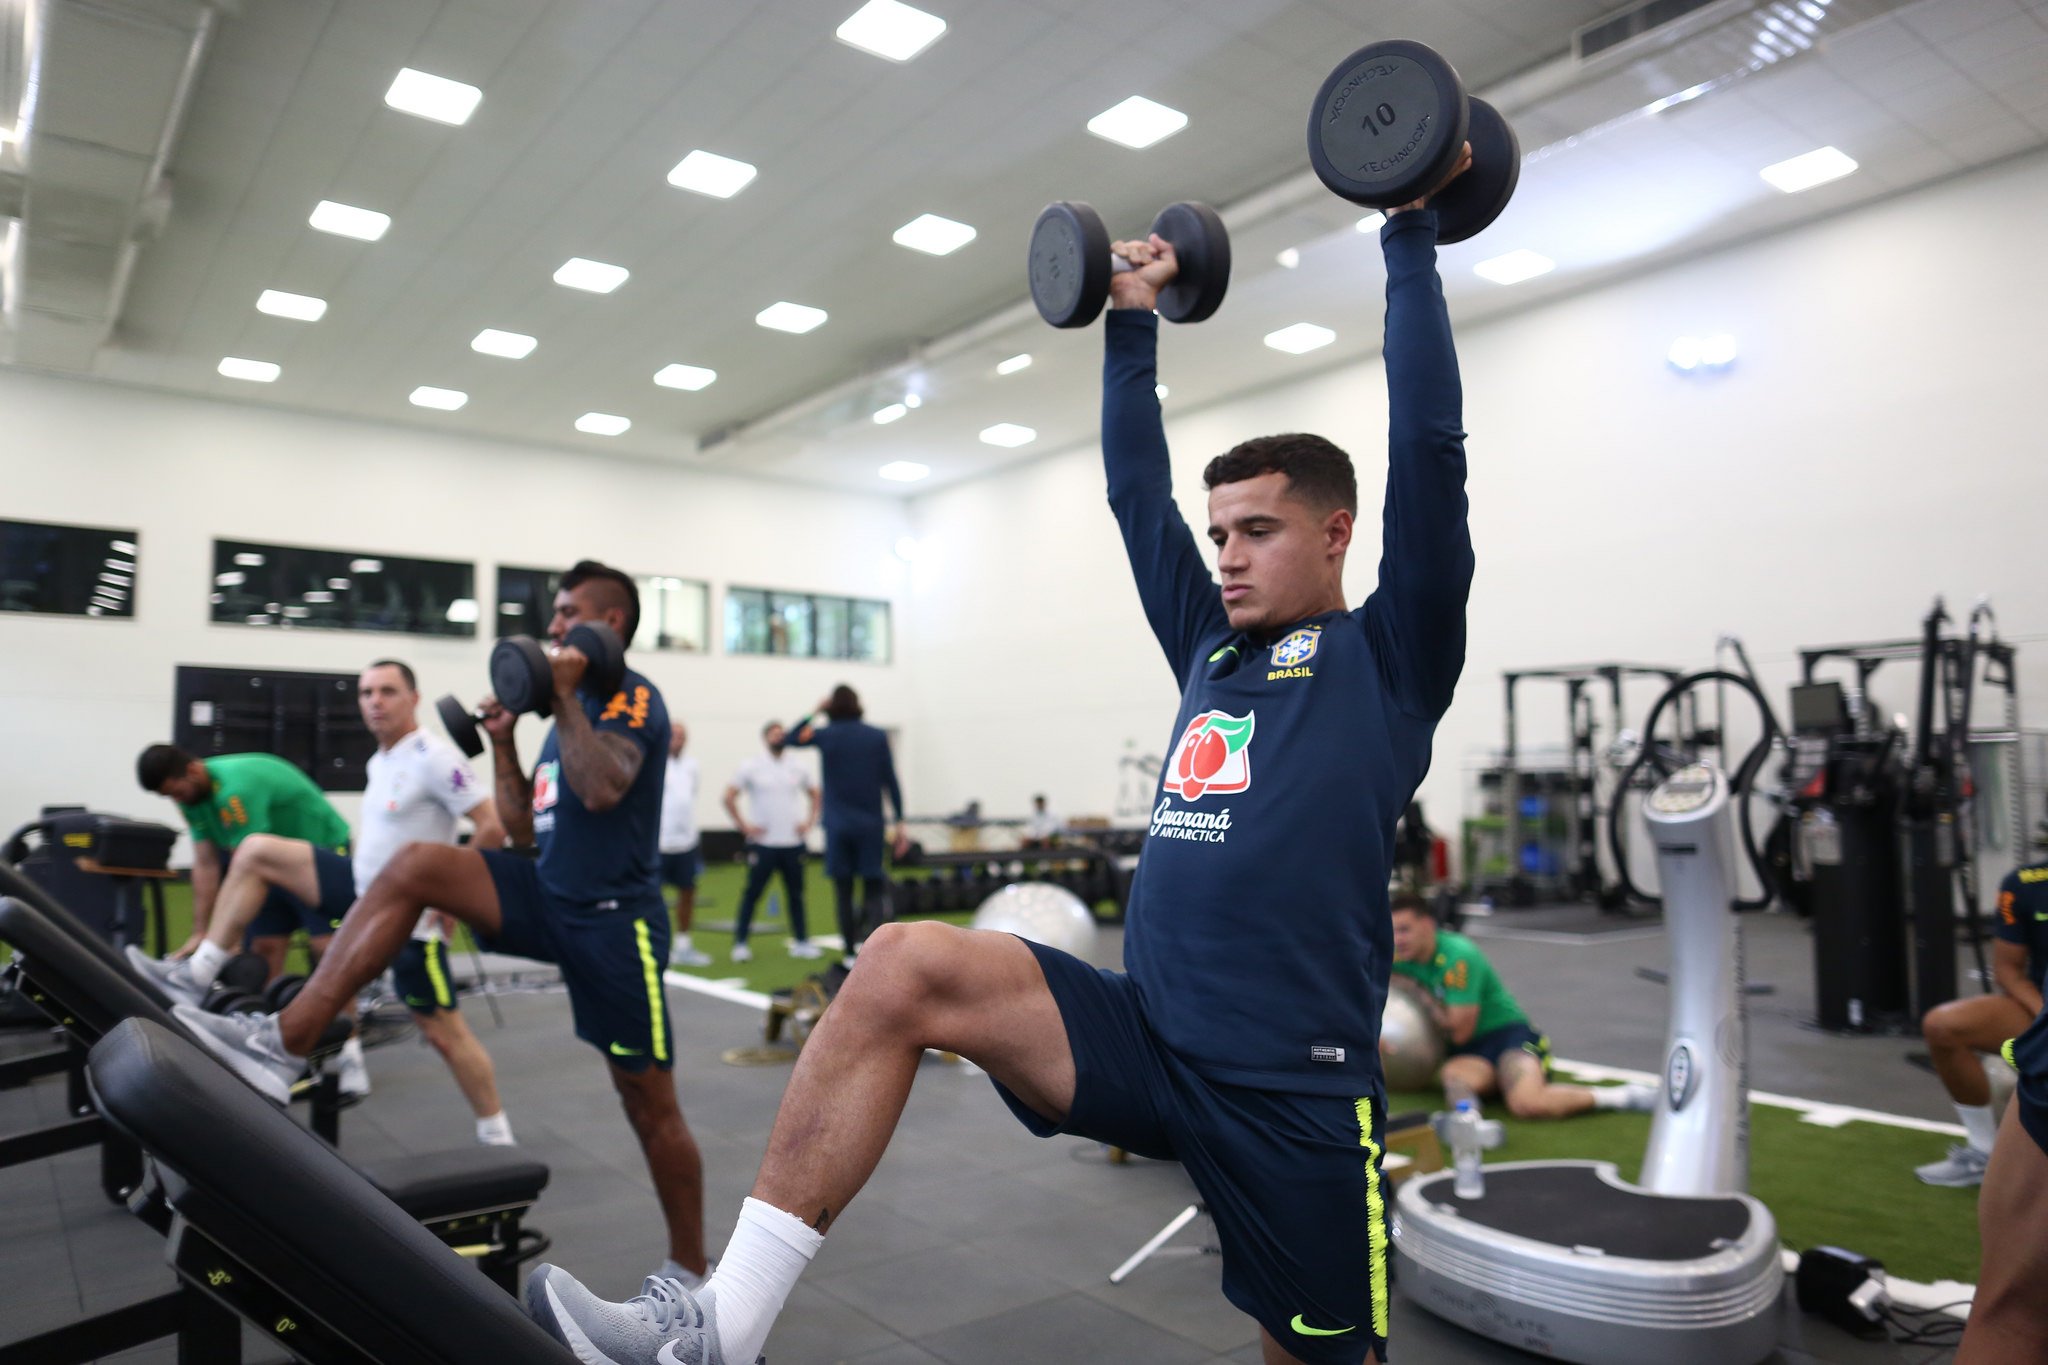 صور : كوتينيو في تدريبات المنتخب البرازيلي 24-05-2018 Dd521qLU0AAhsRE